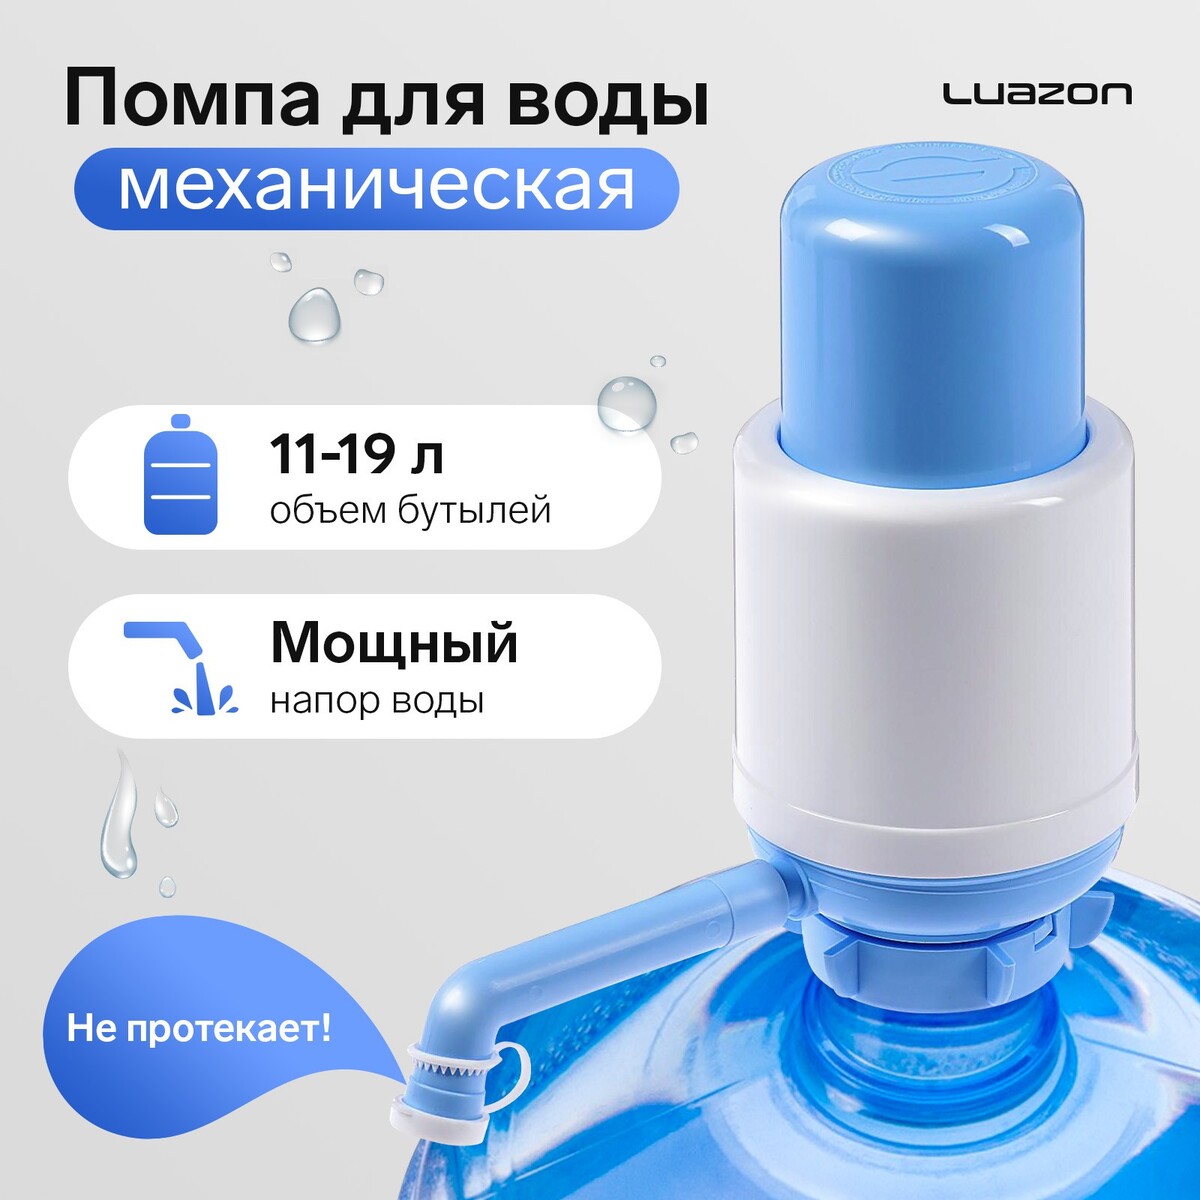 Помпа для воды luazon norma, механическая, большая, под бутыль от 11 до 19 л, голубая помпа для воды luazon механическая средняя под бутыль от 11 до 19 л голубая